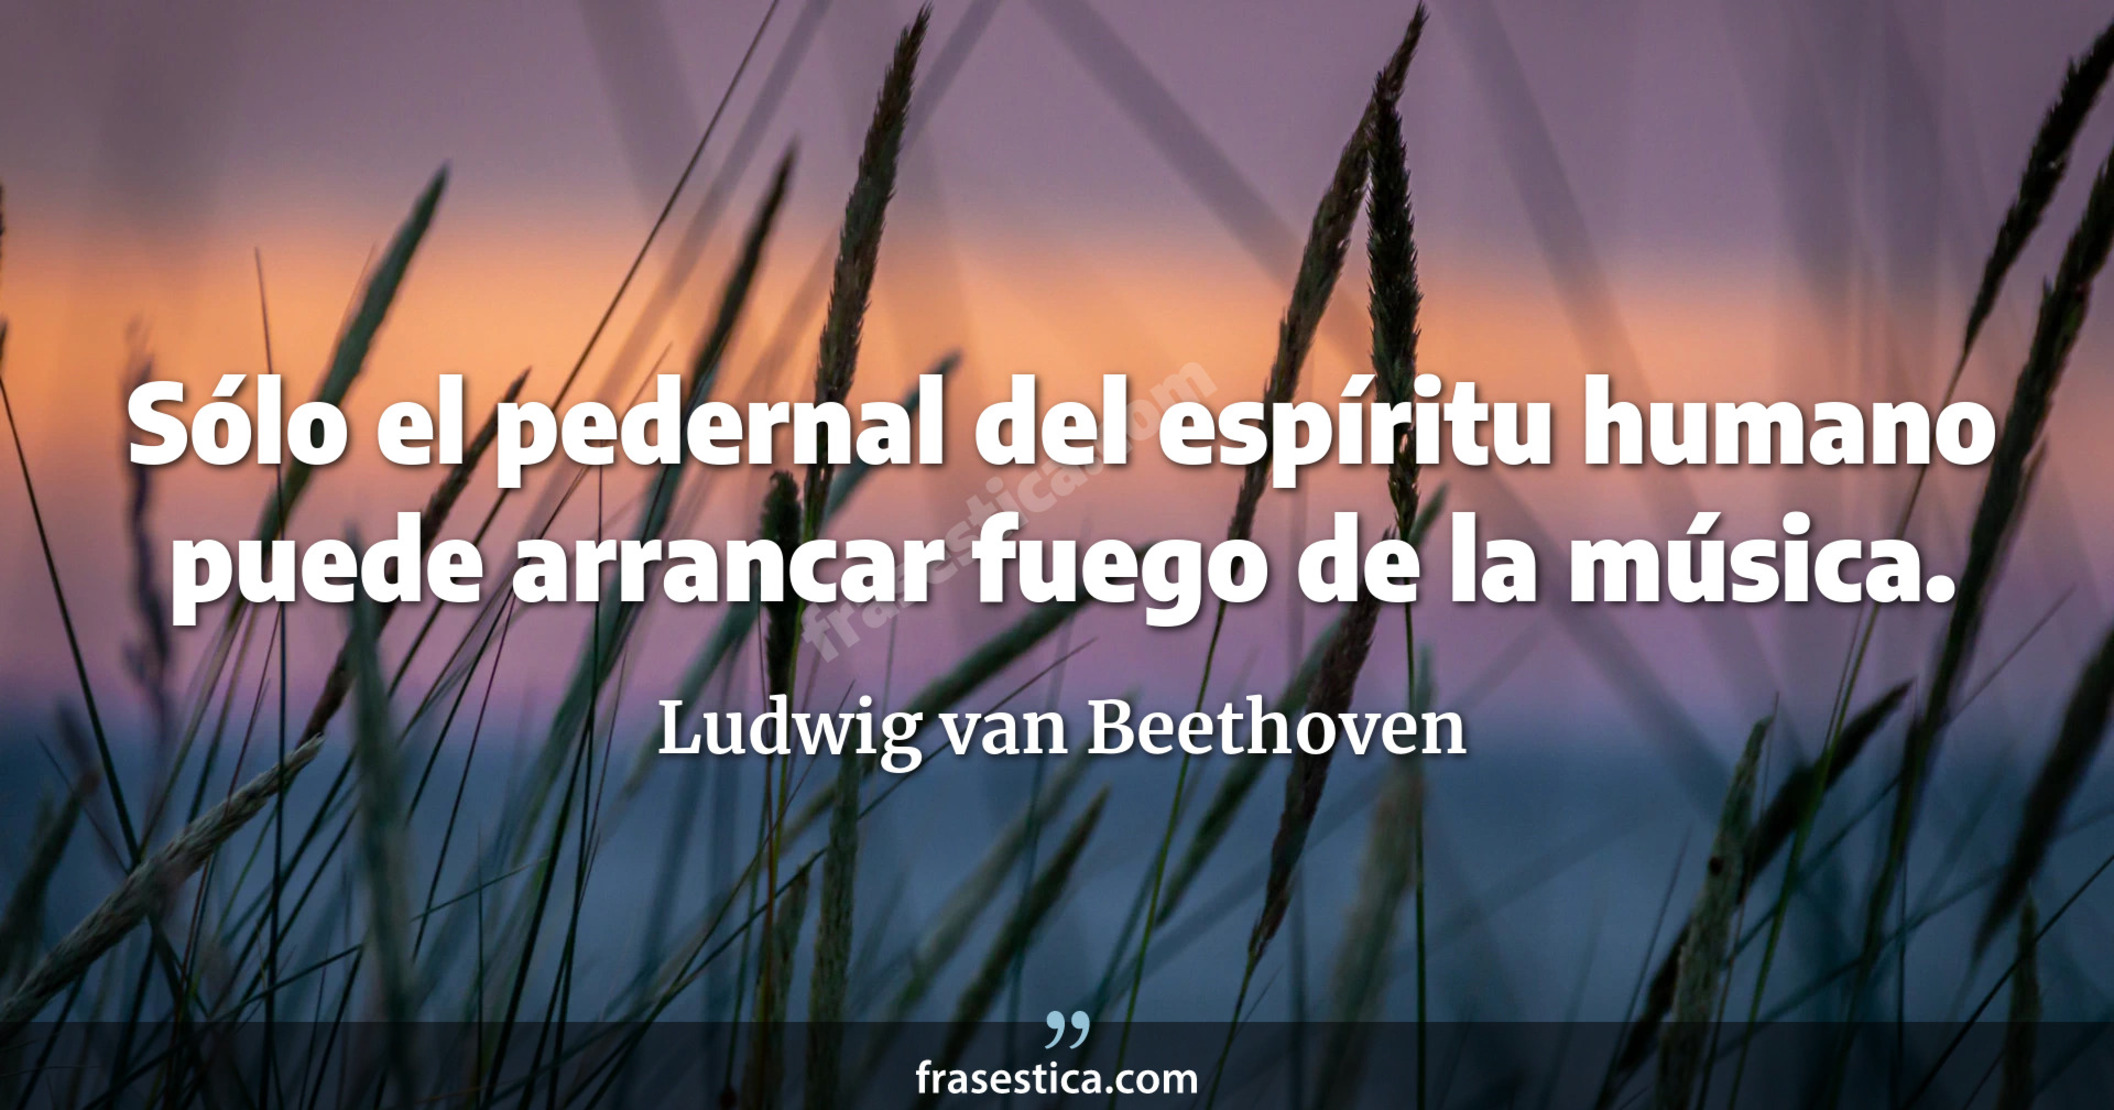 Sólo el pedernal del espíritu humano puede arrancar fuego de la música. - Ludwig van Beethoven